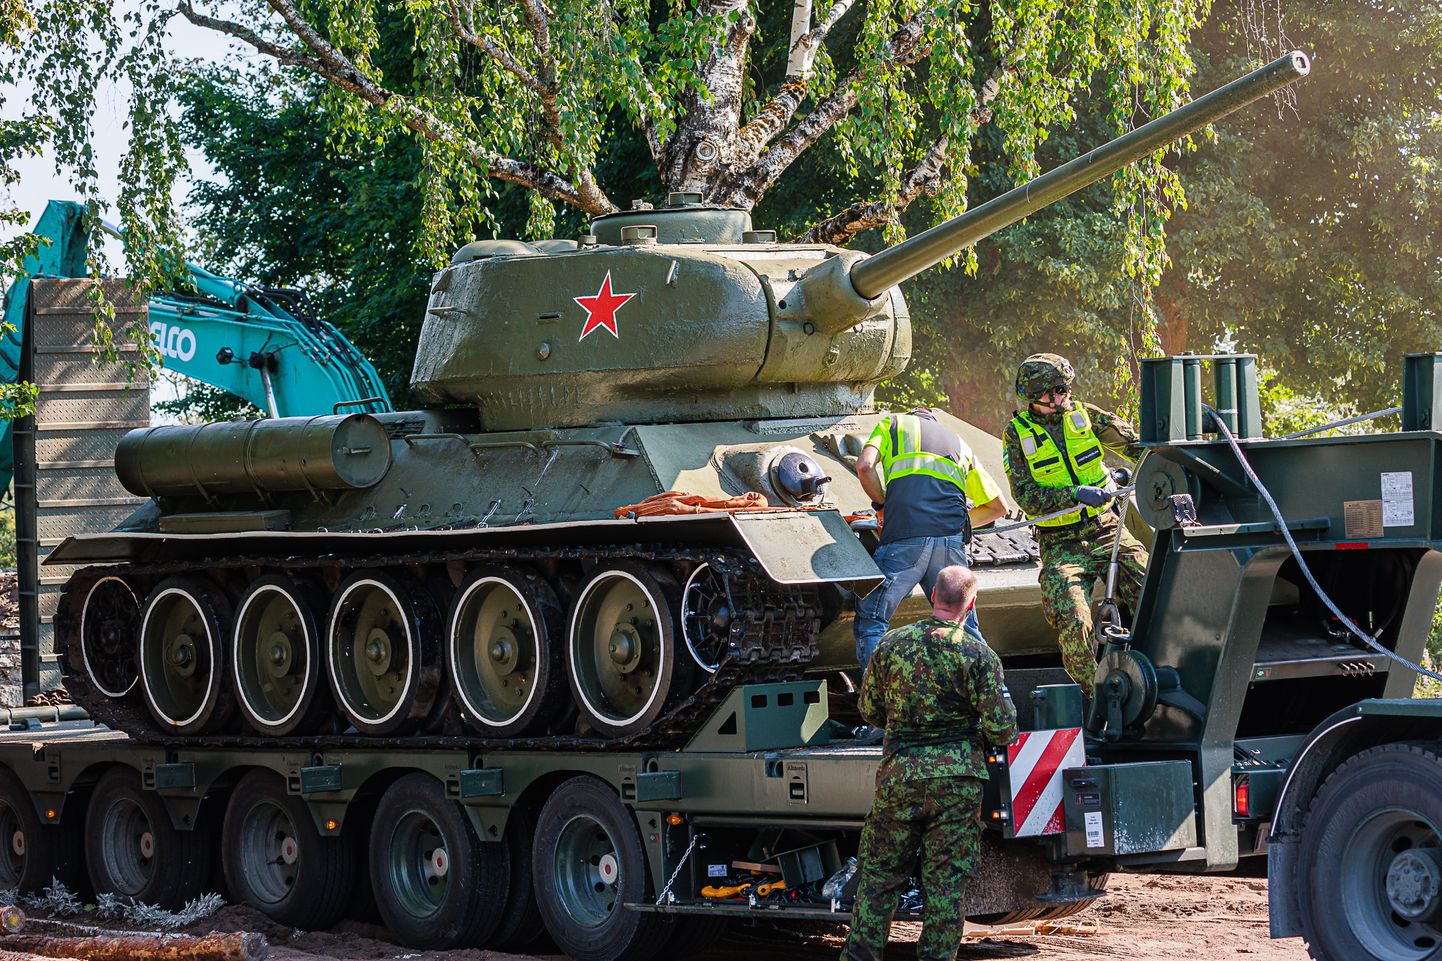 По решению правительства 16 августа прошлого года в Нарве демонтировали и увезли советский памятник-танк и другие красные знаки, что вызвало недовольство части жителей. Однако крупных беспорядков удалось избежать.